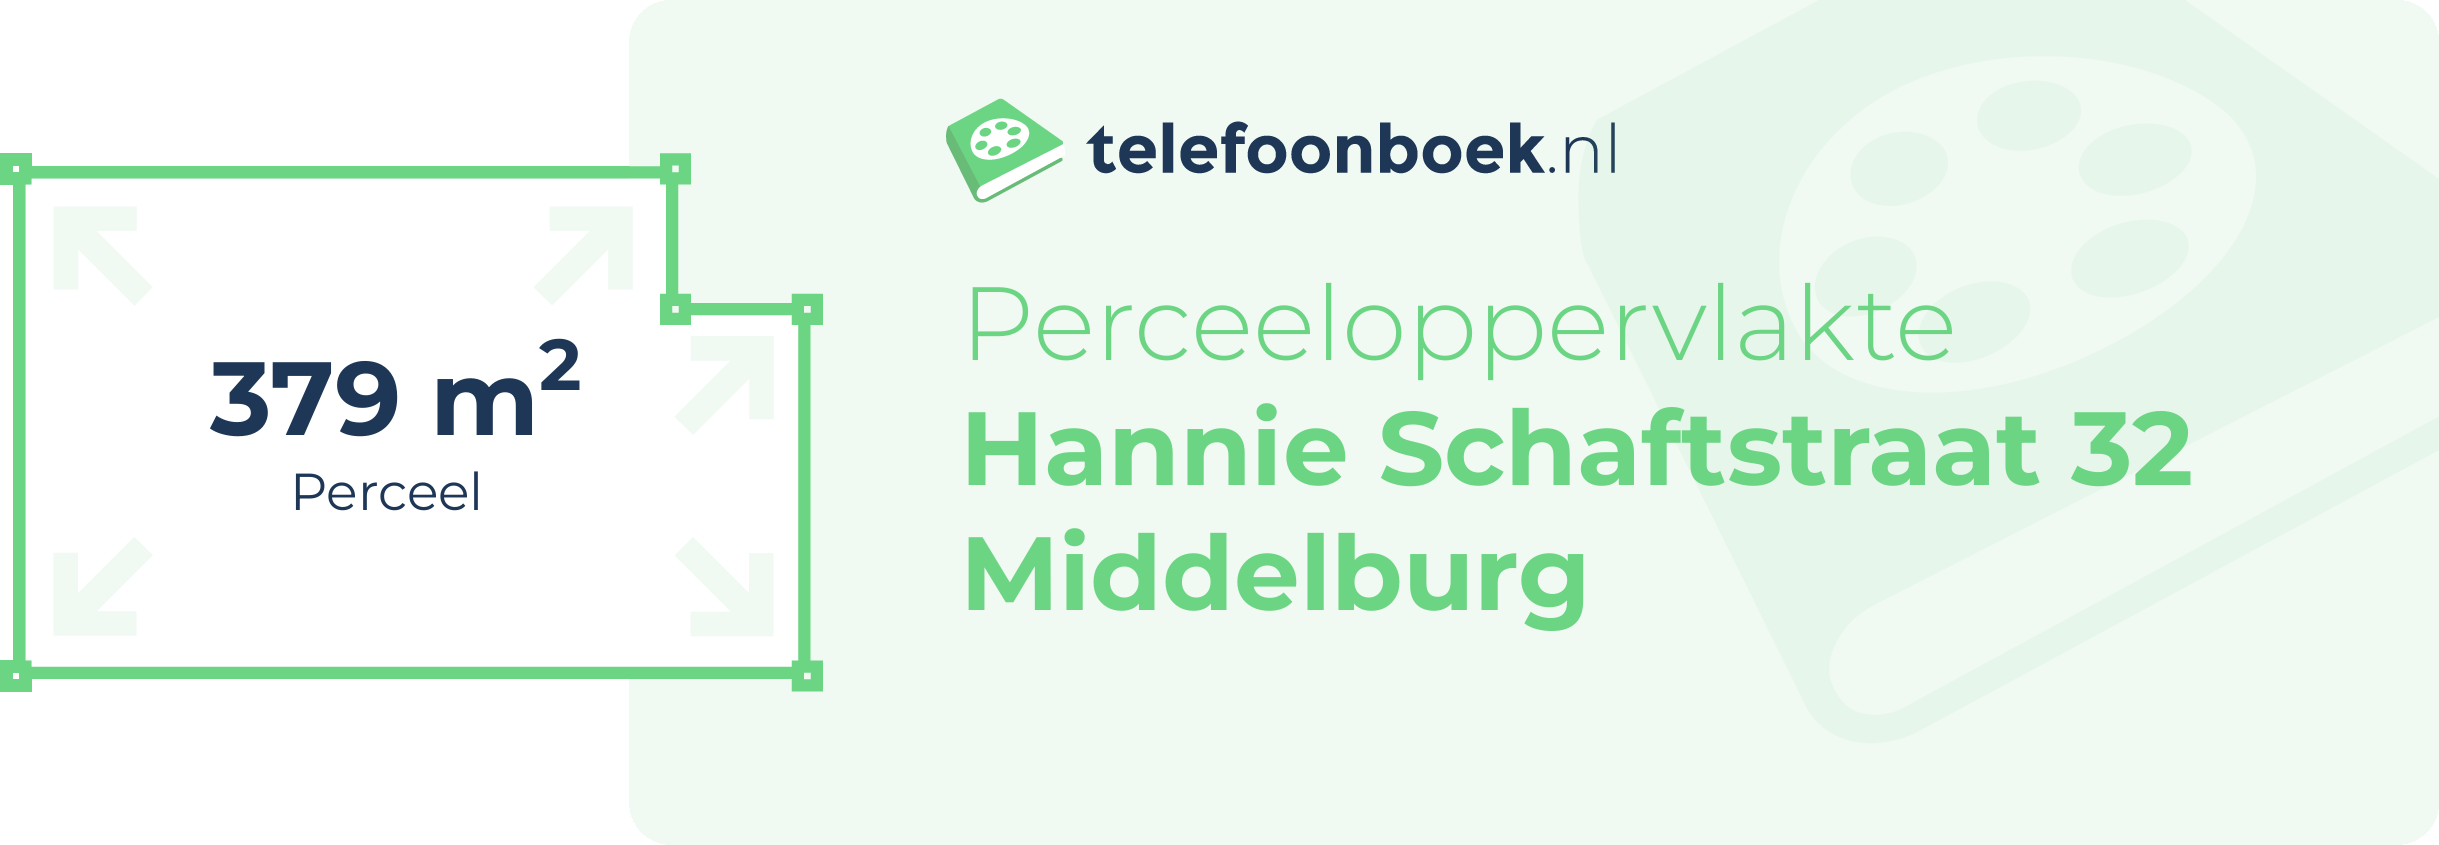 Perceeloppervlakte Hannie Schaftstraat 32 Middelburg